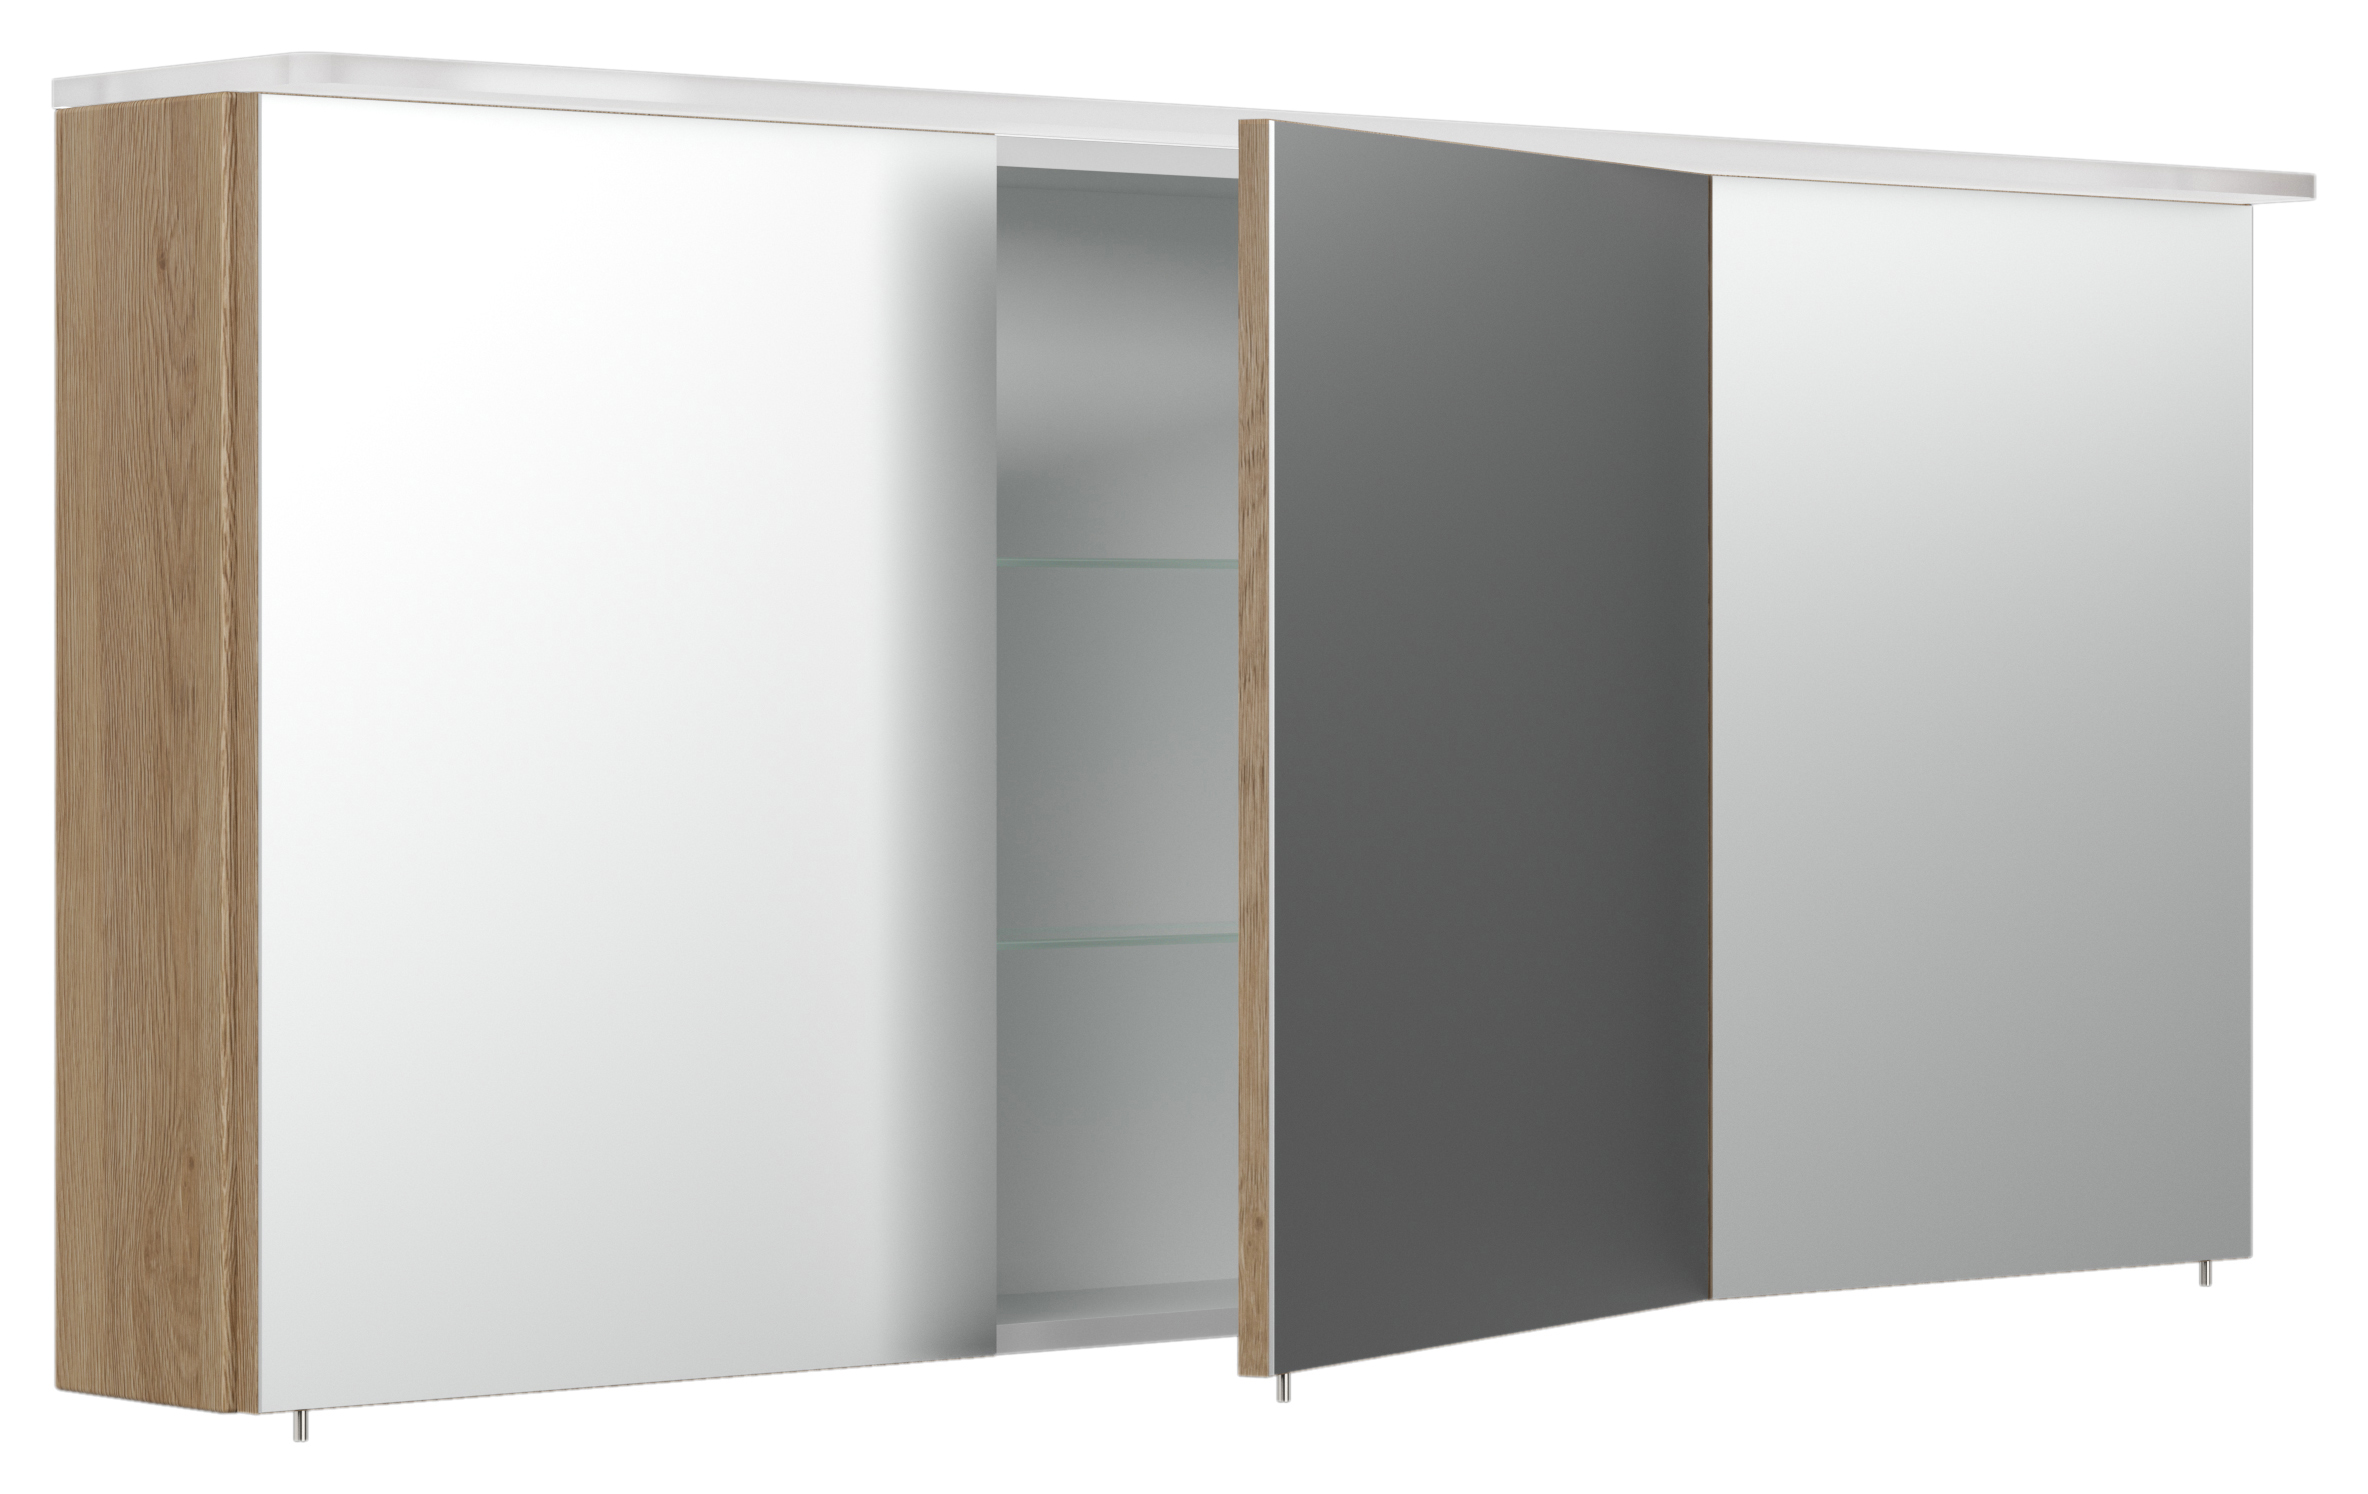 Spiegelschrank 140cm inkl. Design Acryl-Lampe und Glasböden schwarz seidenglanz